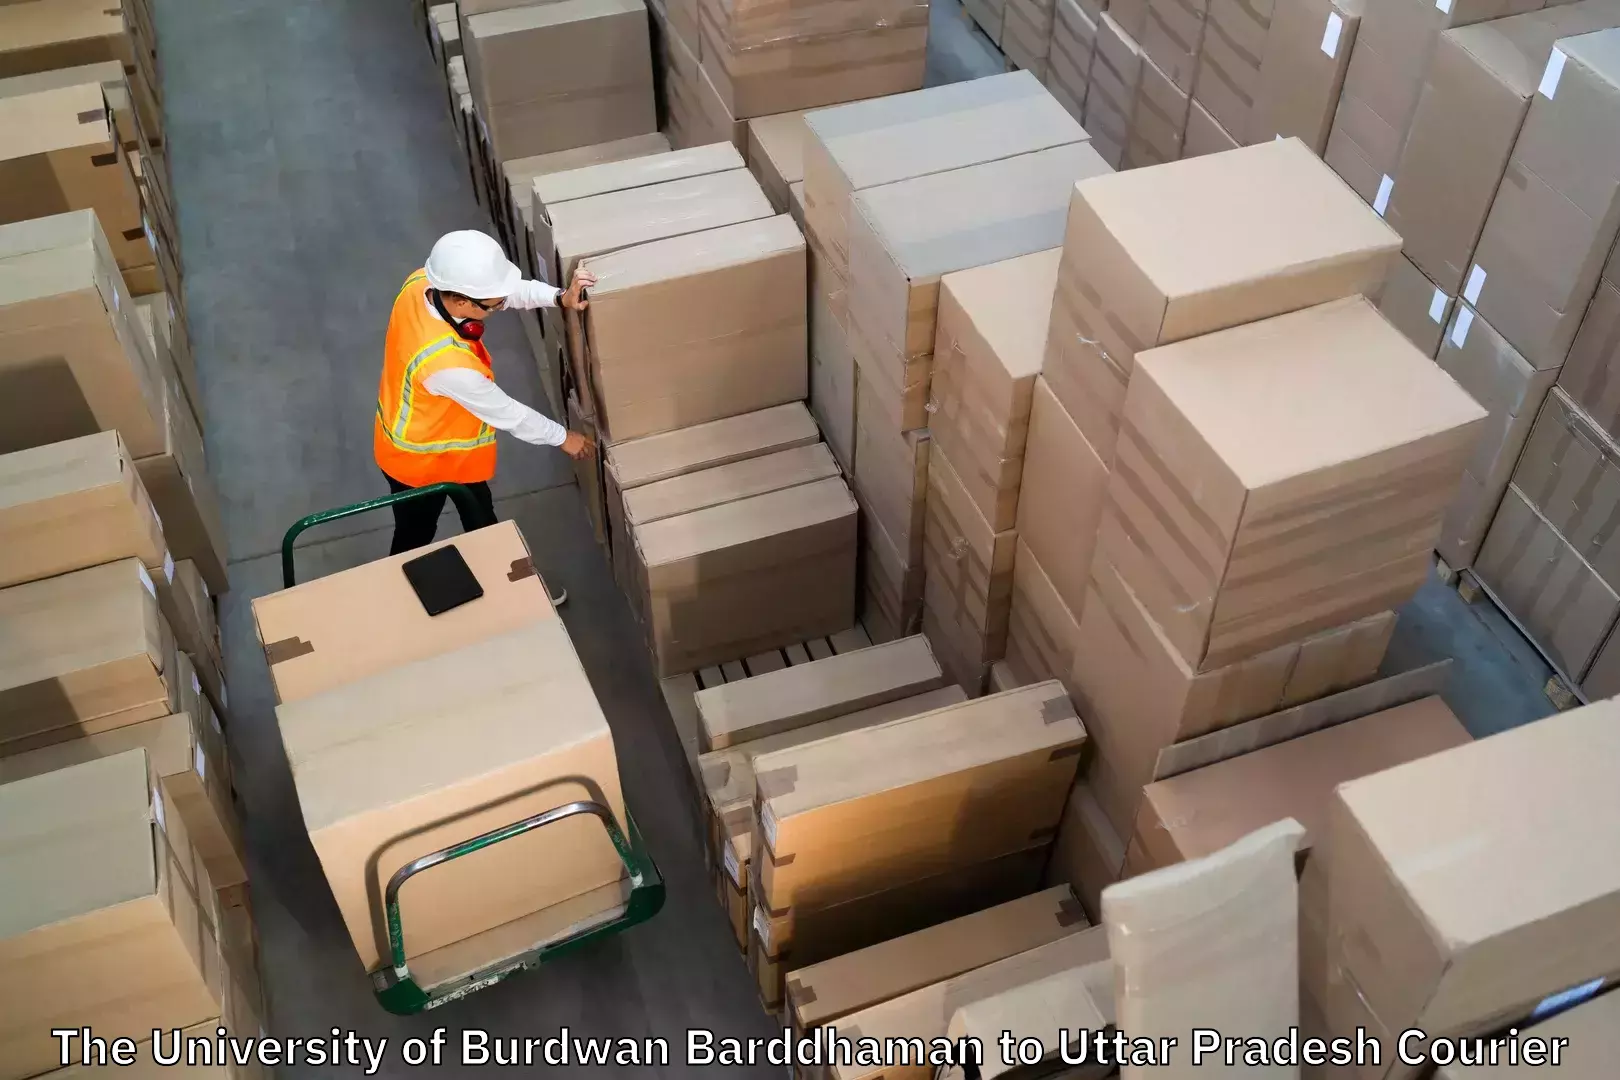 Baggage transport estimate The University of Burdwan Barddhaman to IIT Varanasi